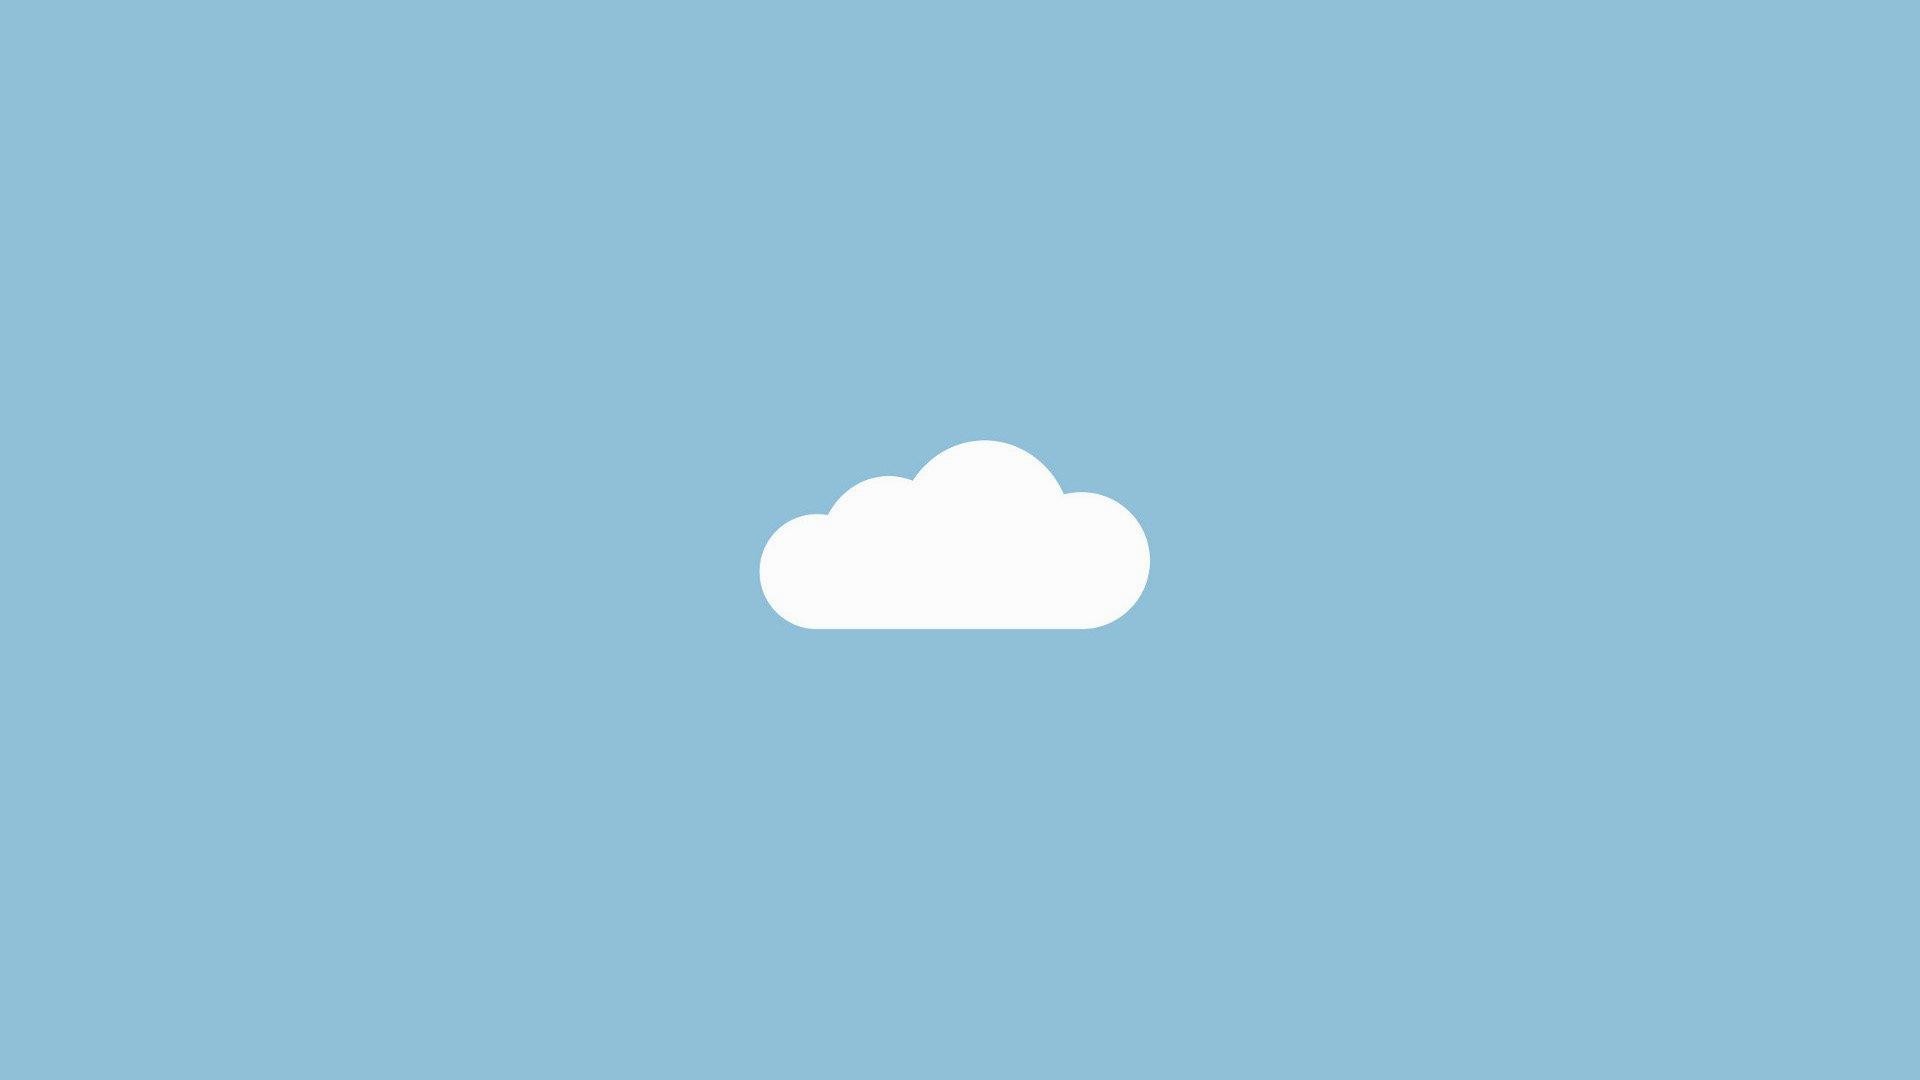 semplice download di sfondi,nube,giorno,cielo,blu,font